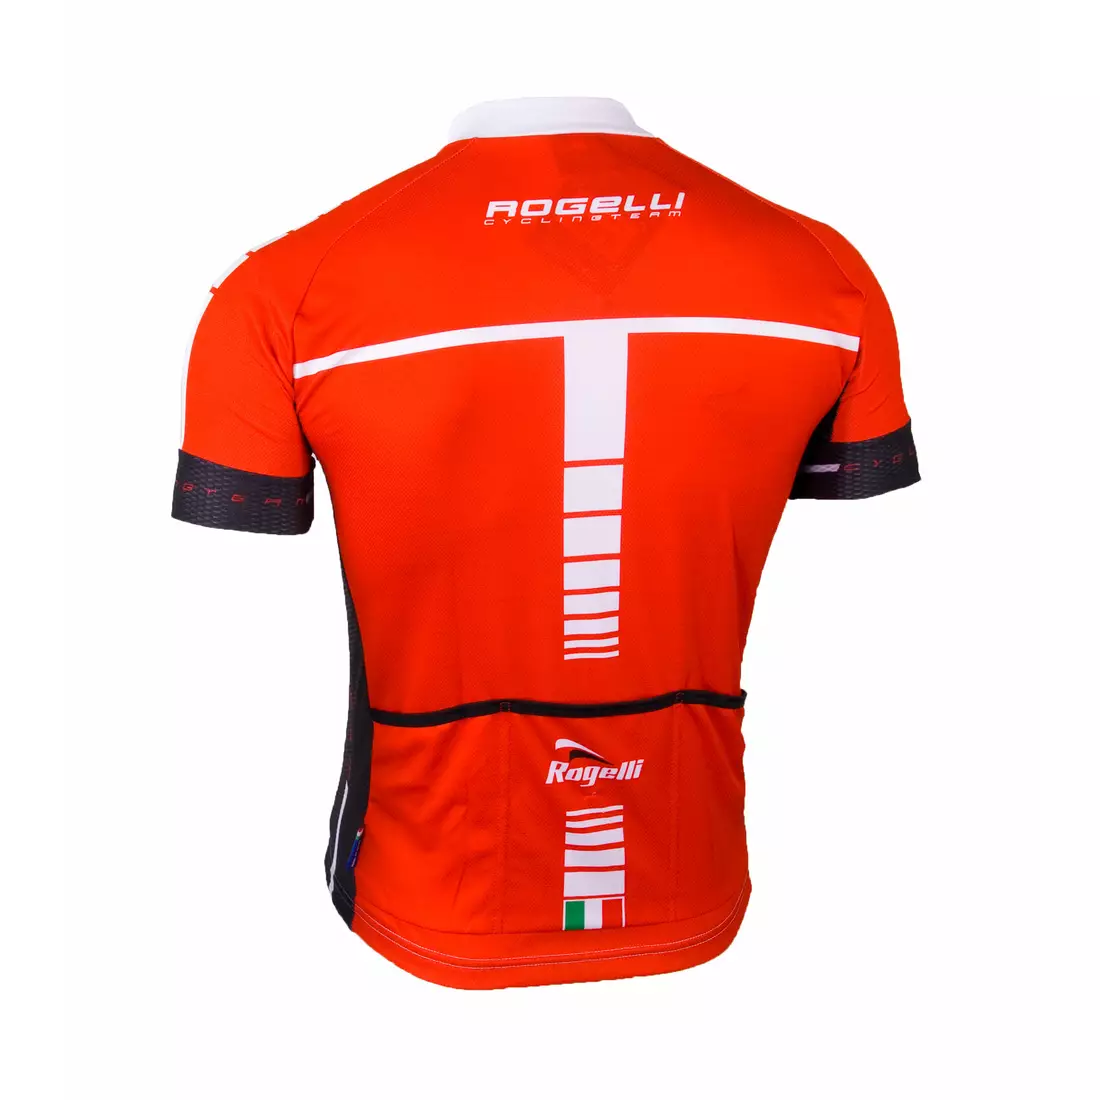 ROGELLI UMBRIA pánský cyklistický dres, 001.232, červený